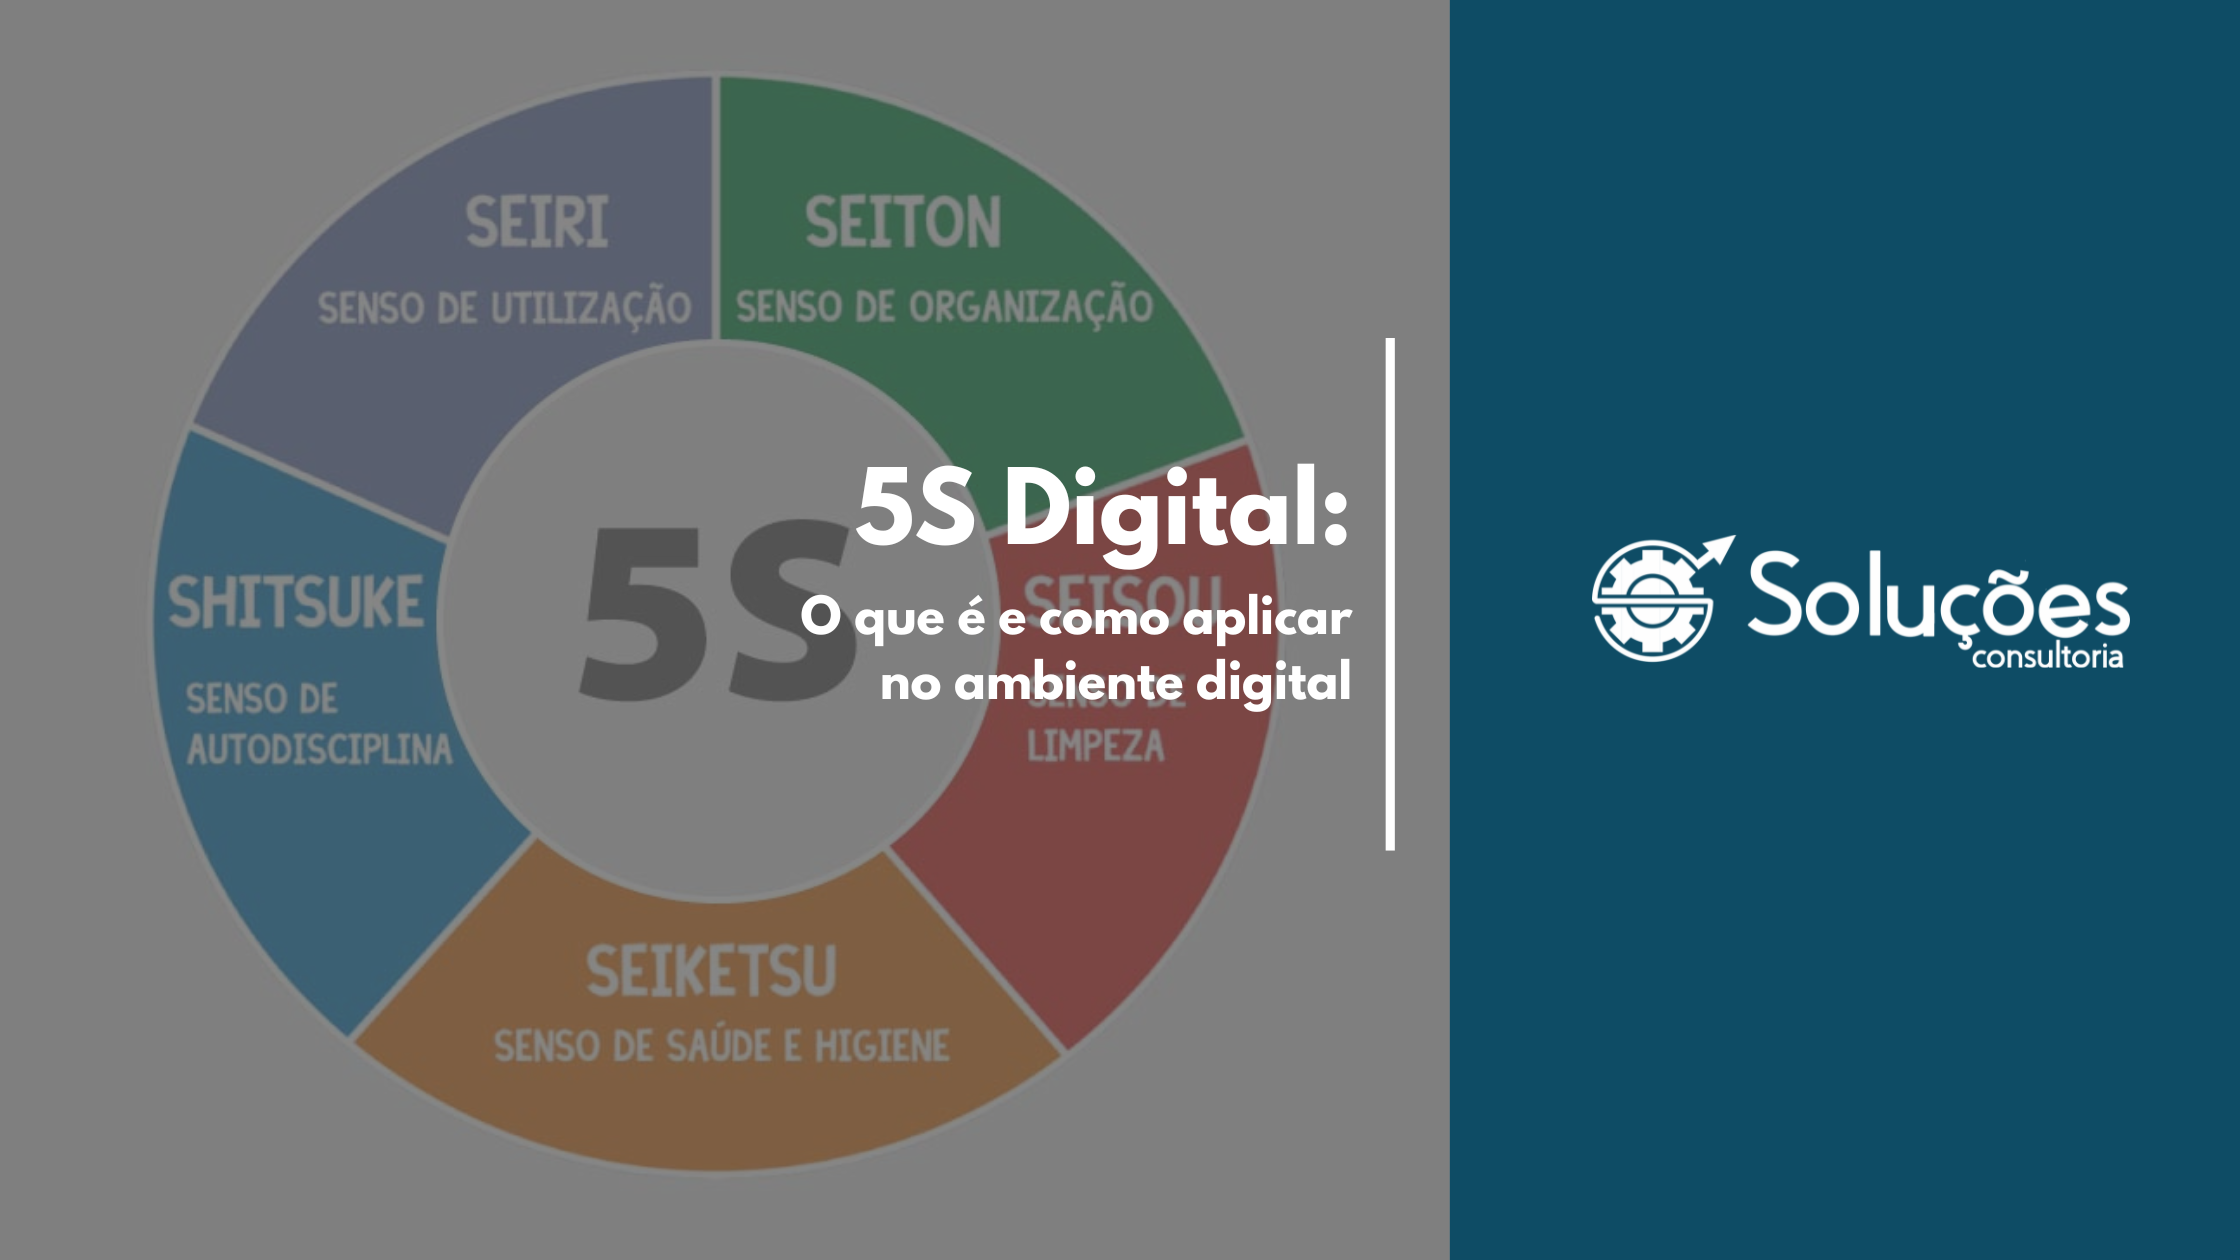 5S Digital: O que é e como aplicar no ambiente digital